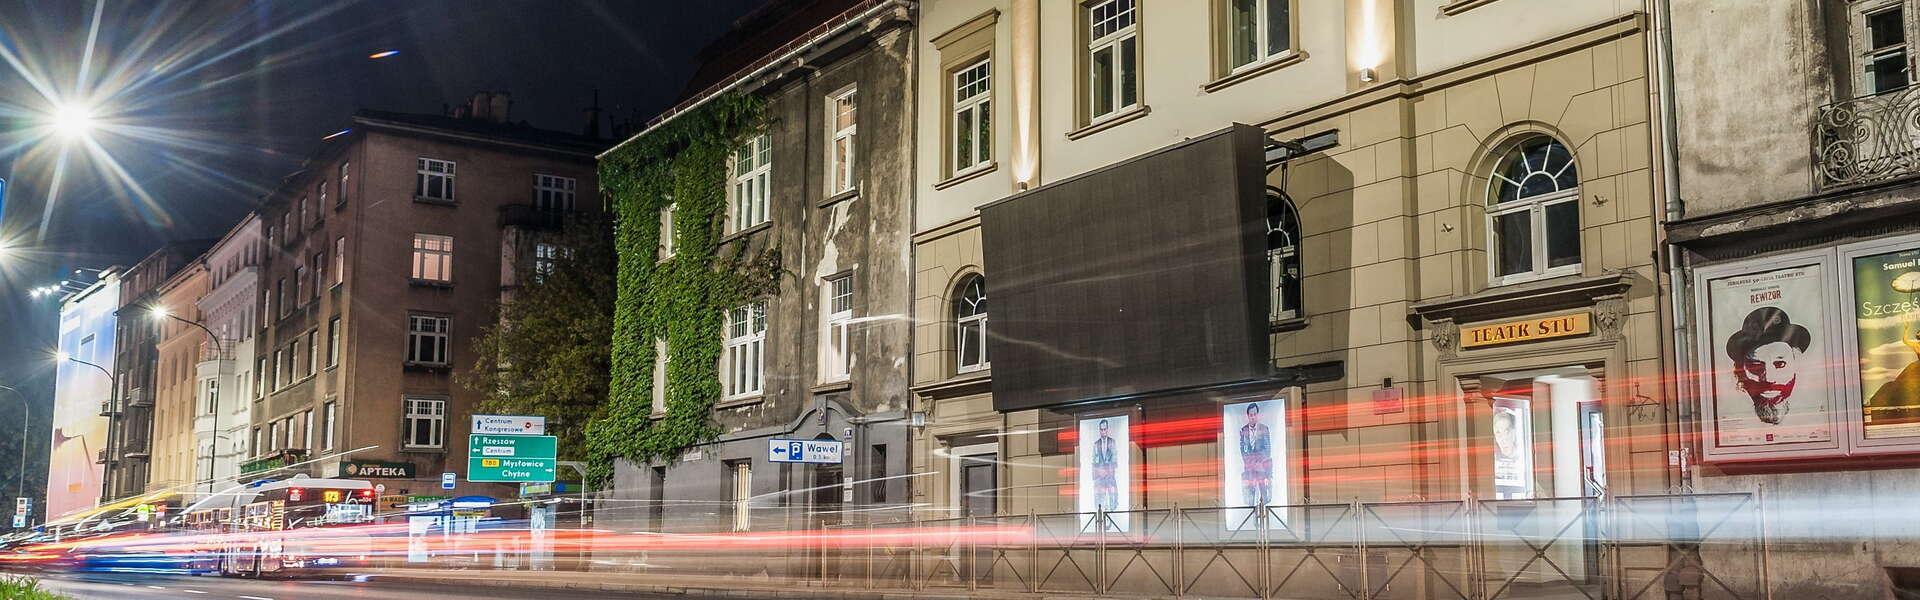 Budynek Teatru Stu w ciągu budynków przy krakowskiej alei Zygmunta Krasińskiego widziany nocą